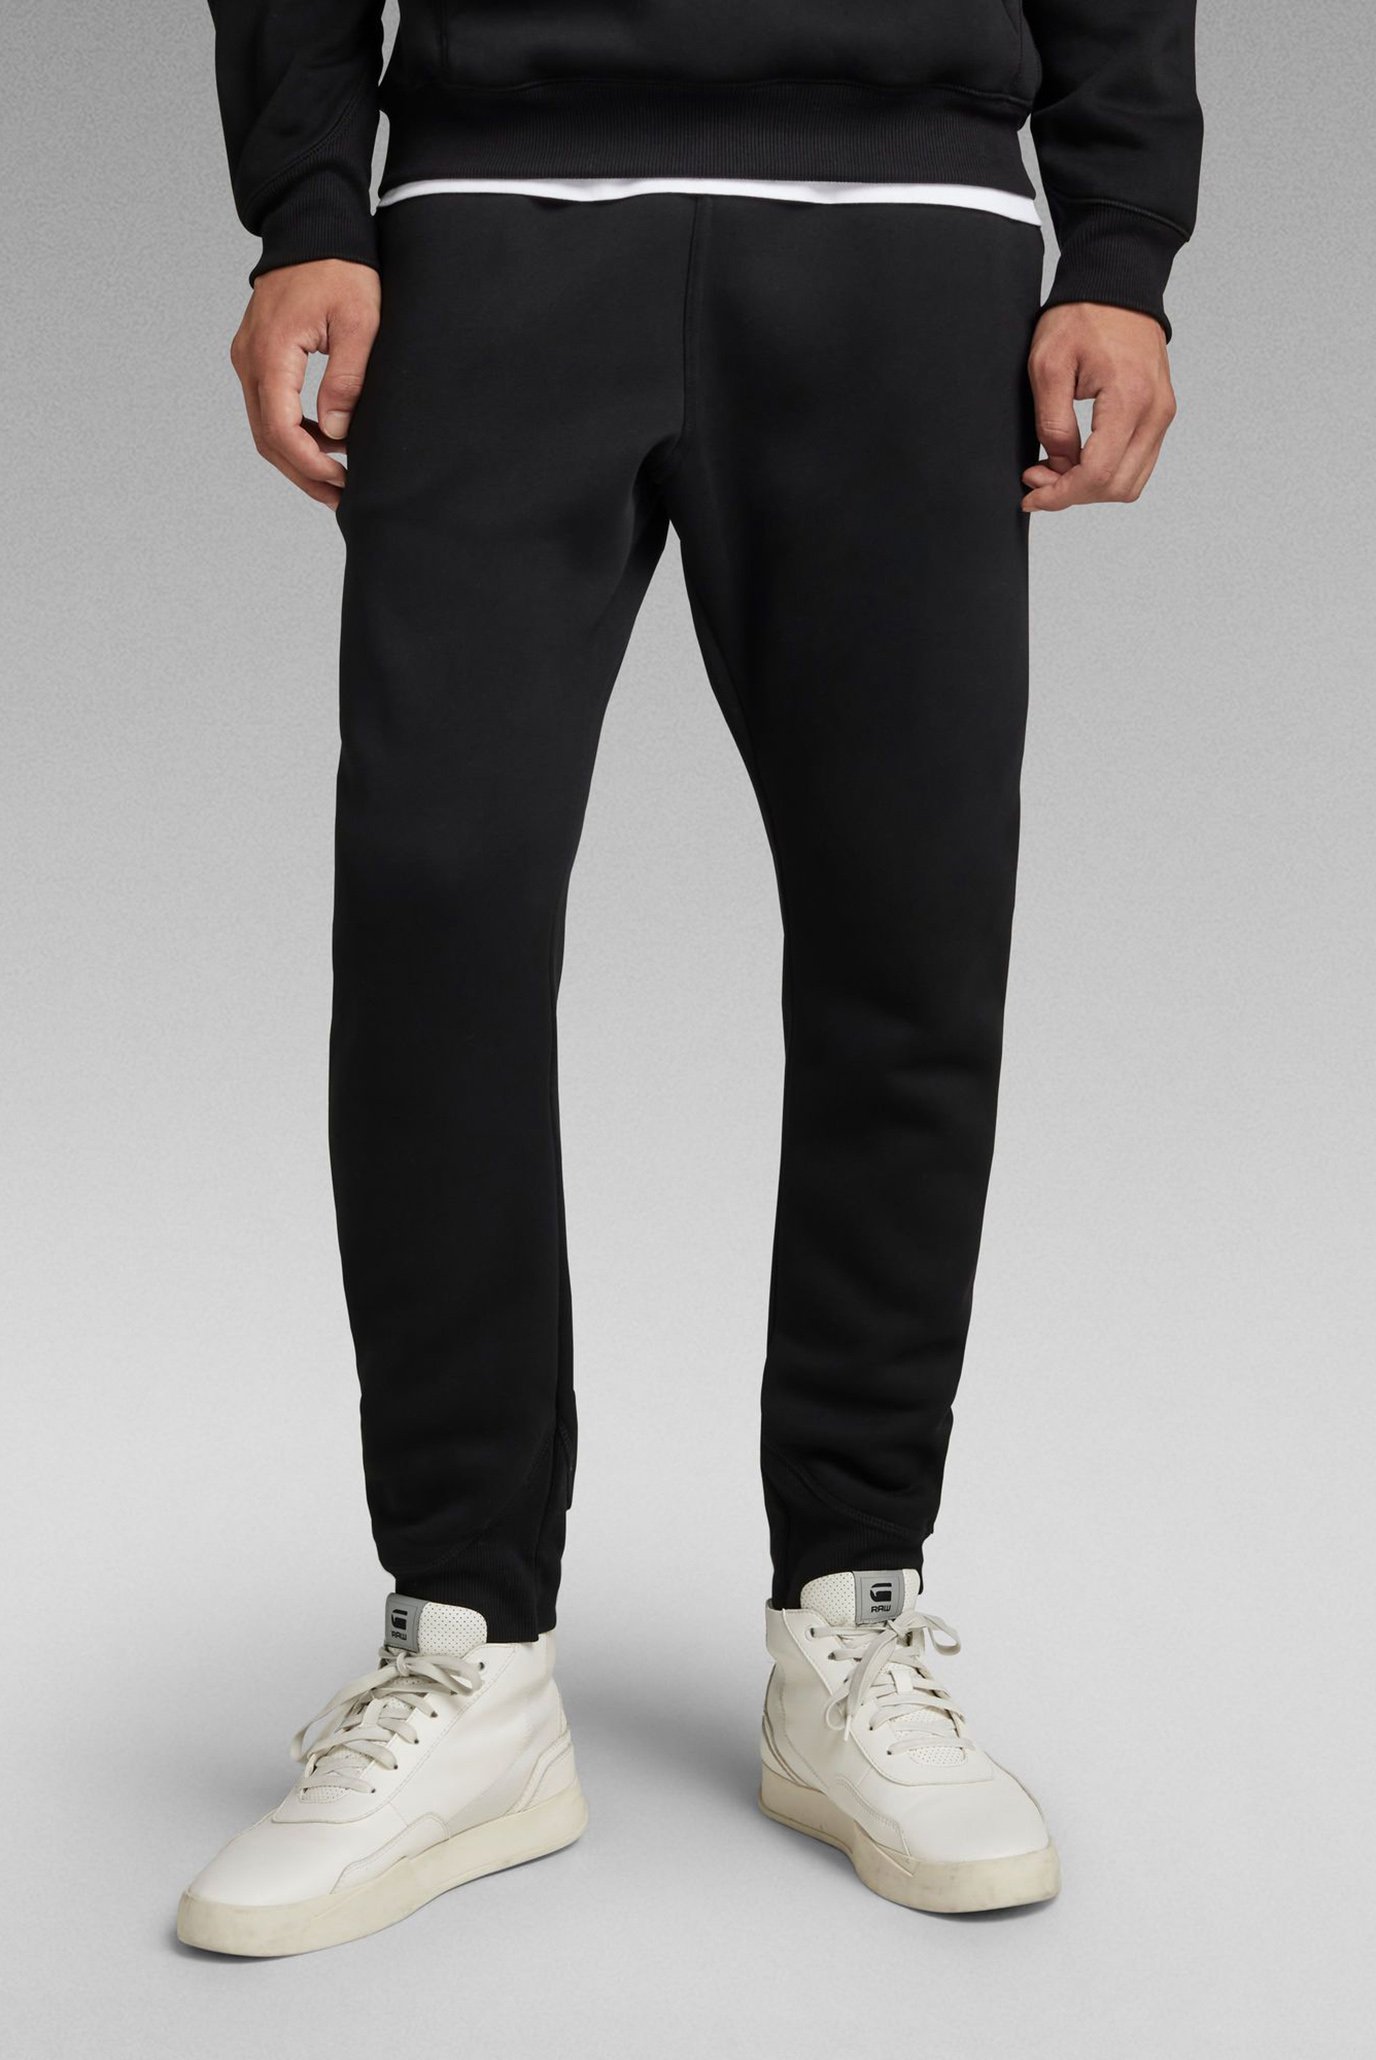 Мужские черные спортивные брюки Premium core type 1